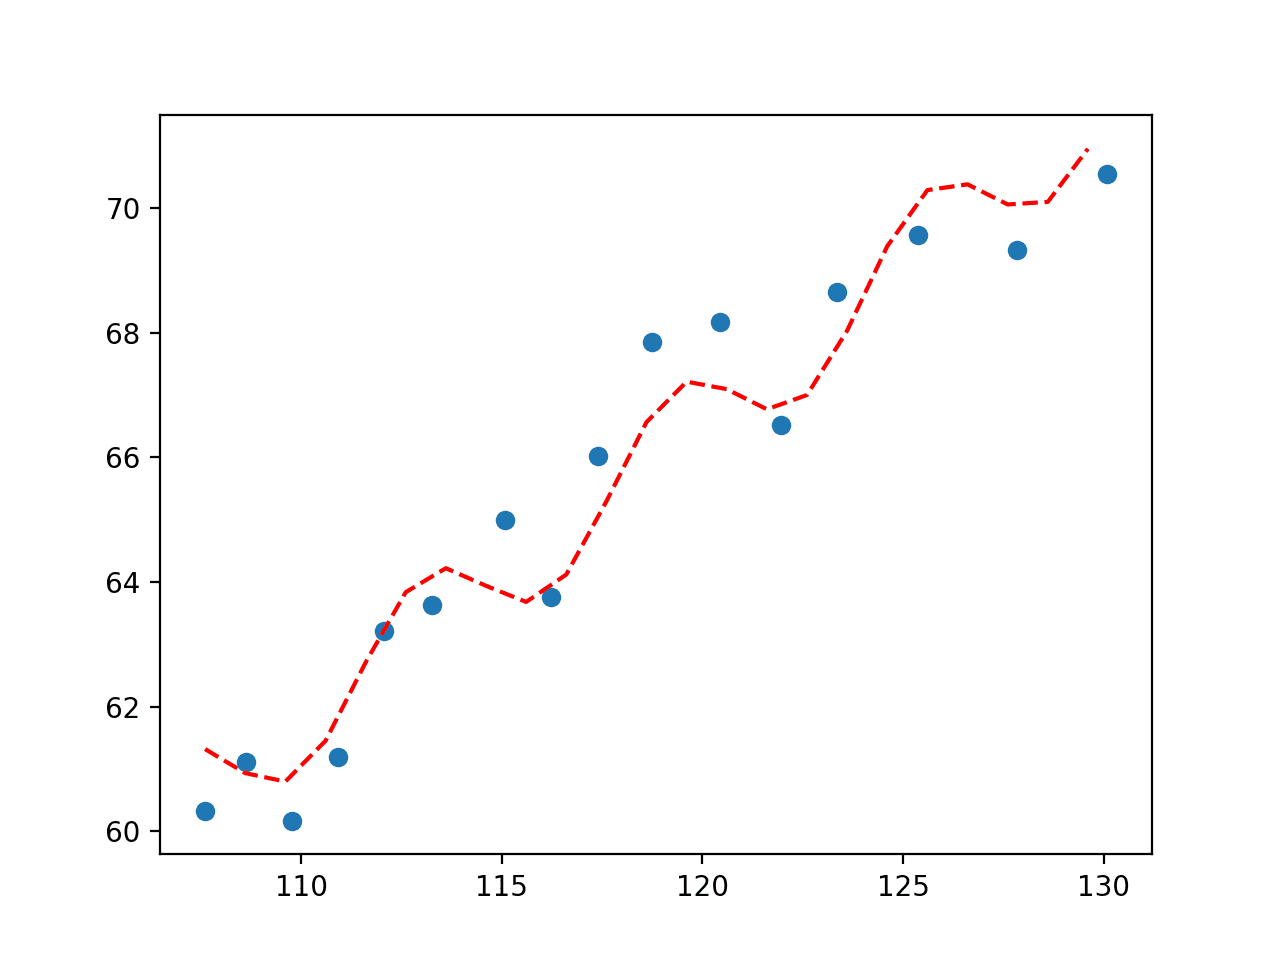 拟合经济数据集的正弦波图